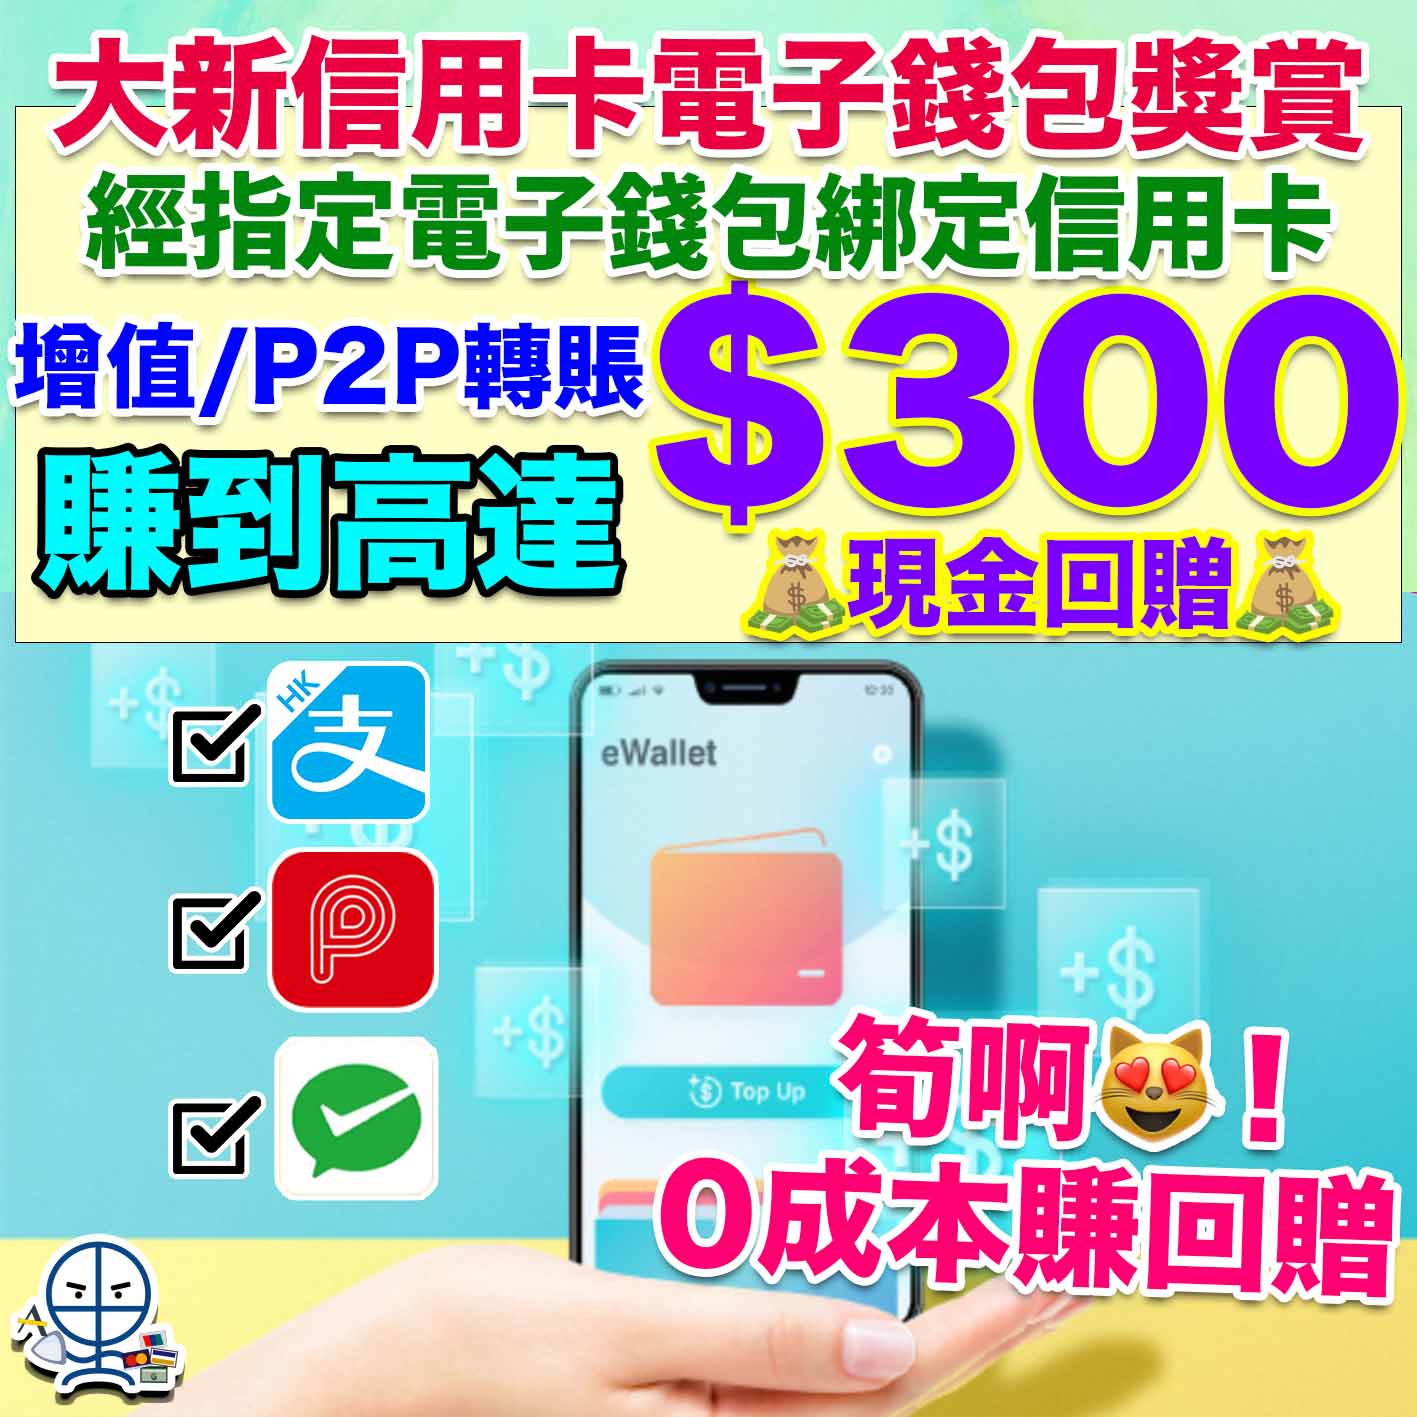 大新銀行電子錢包增值獎賞-DSB-Dah Sing Bank-AlipayHK-PayMe -WeChat Pay HK-現金回贈